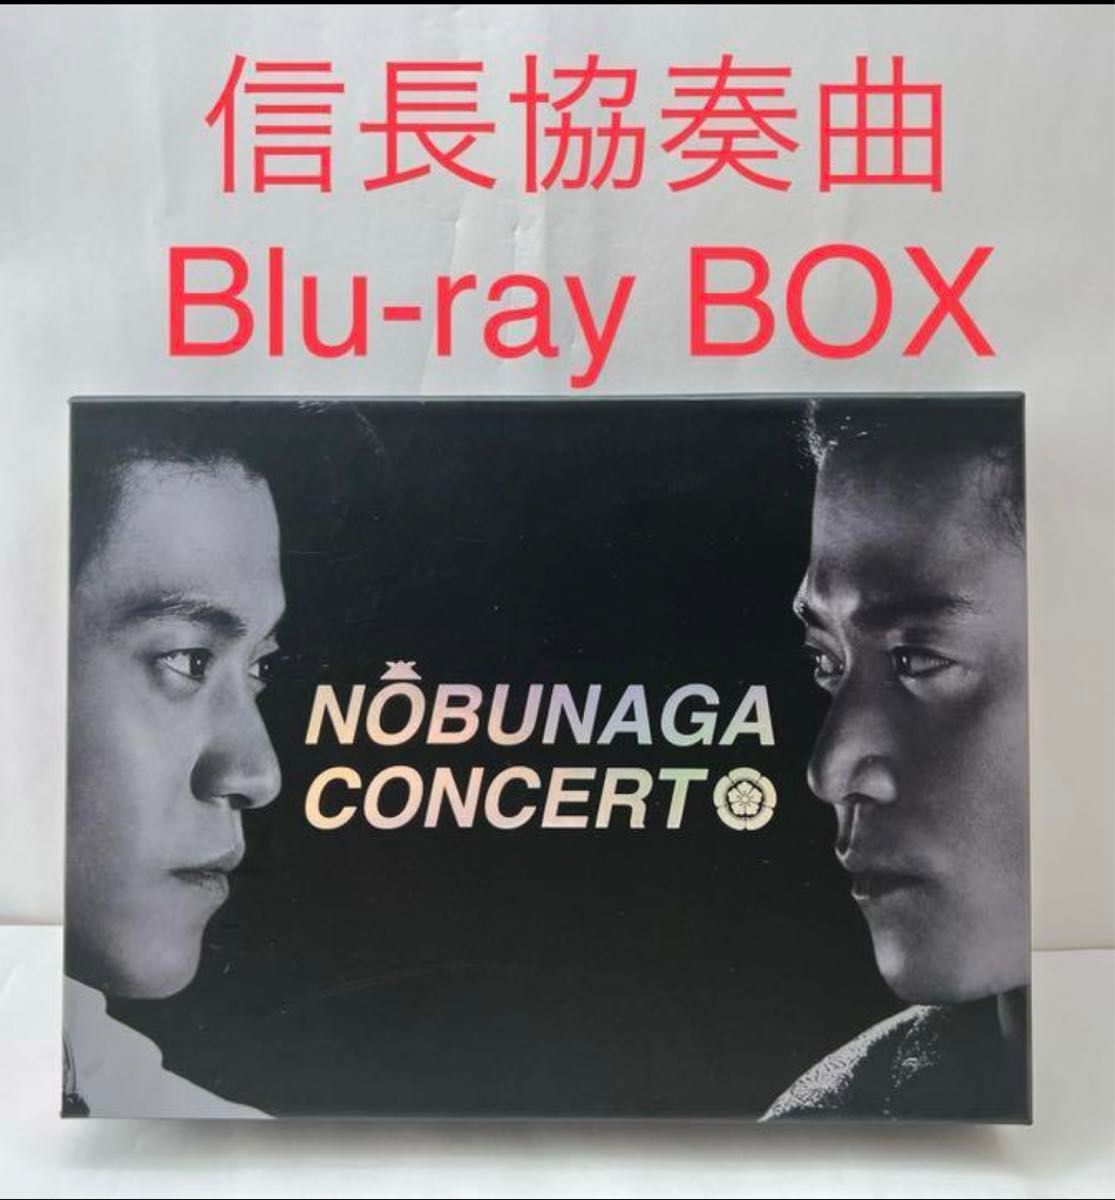 信長協奏曲(コンツェルト) Blu-ray BOX〈4枚組〉